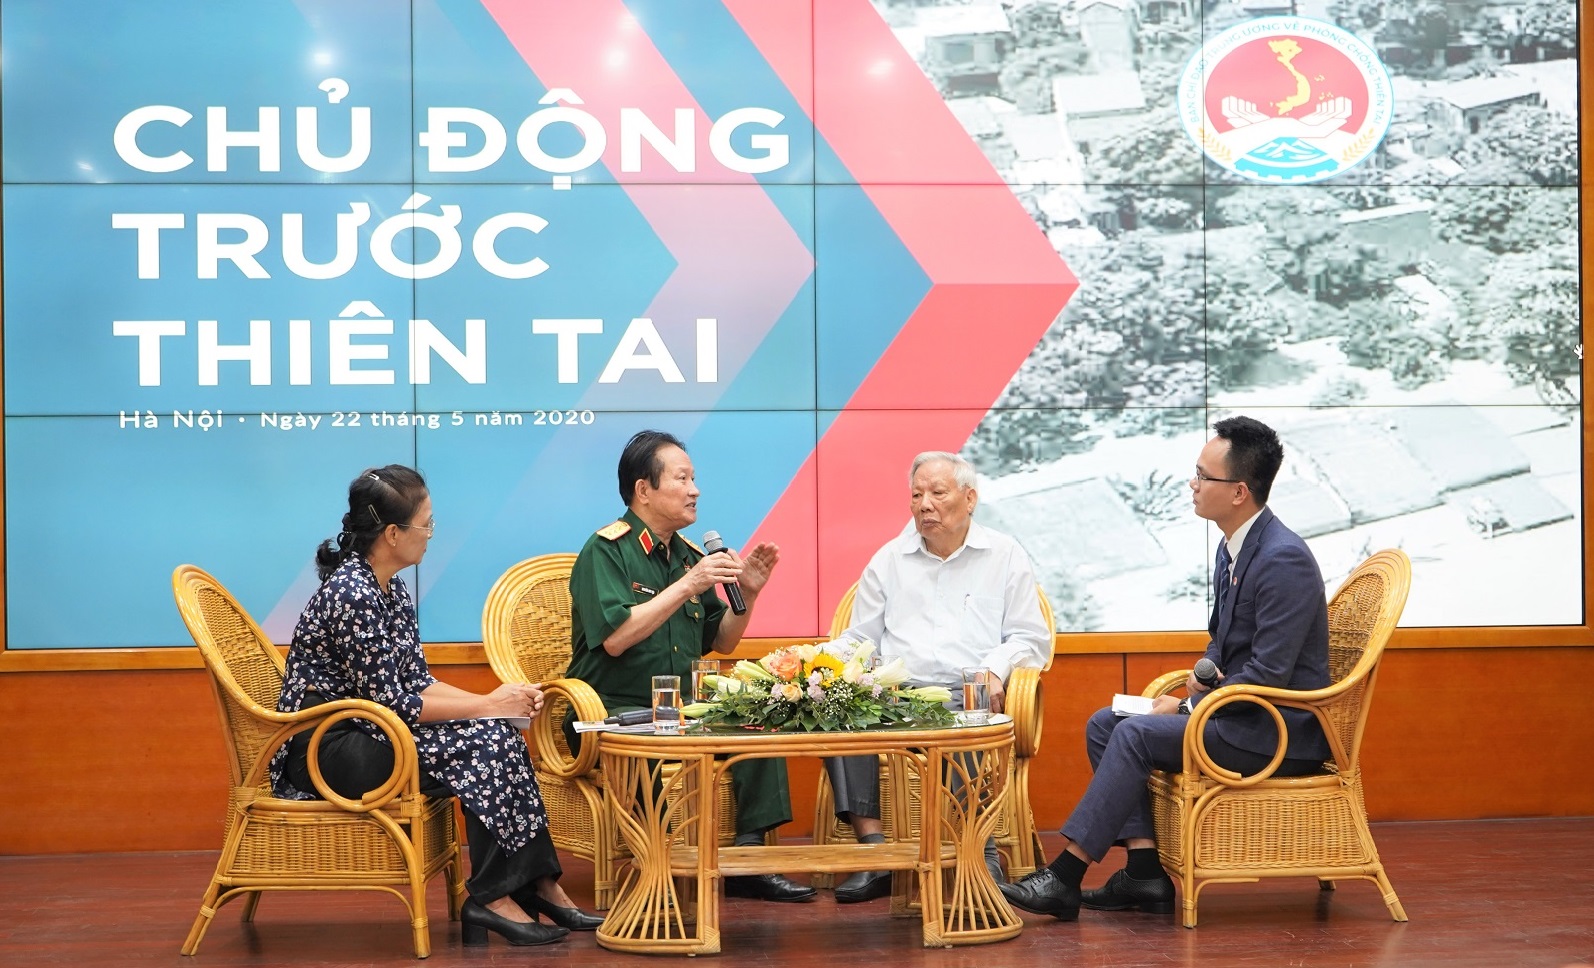 Ông Lê Huy Ngọ (áo trắng) tại buổi tọa đàm với chủ đề “Chủ động trước thiên tai” trong khuôn khổ Lễ kỷ niệm 74 năm Ngày Phòng chống thiên tai Việt Nam (22/5/1946 – 22/5/2020)